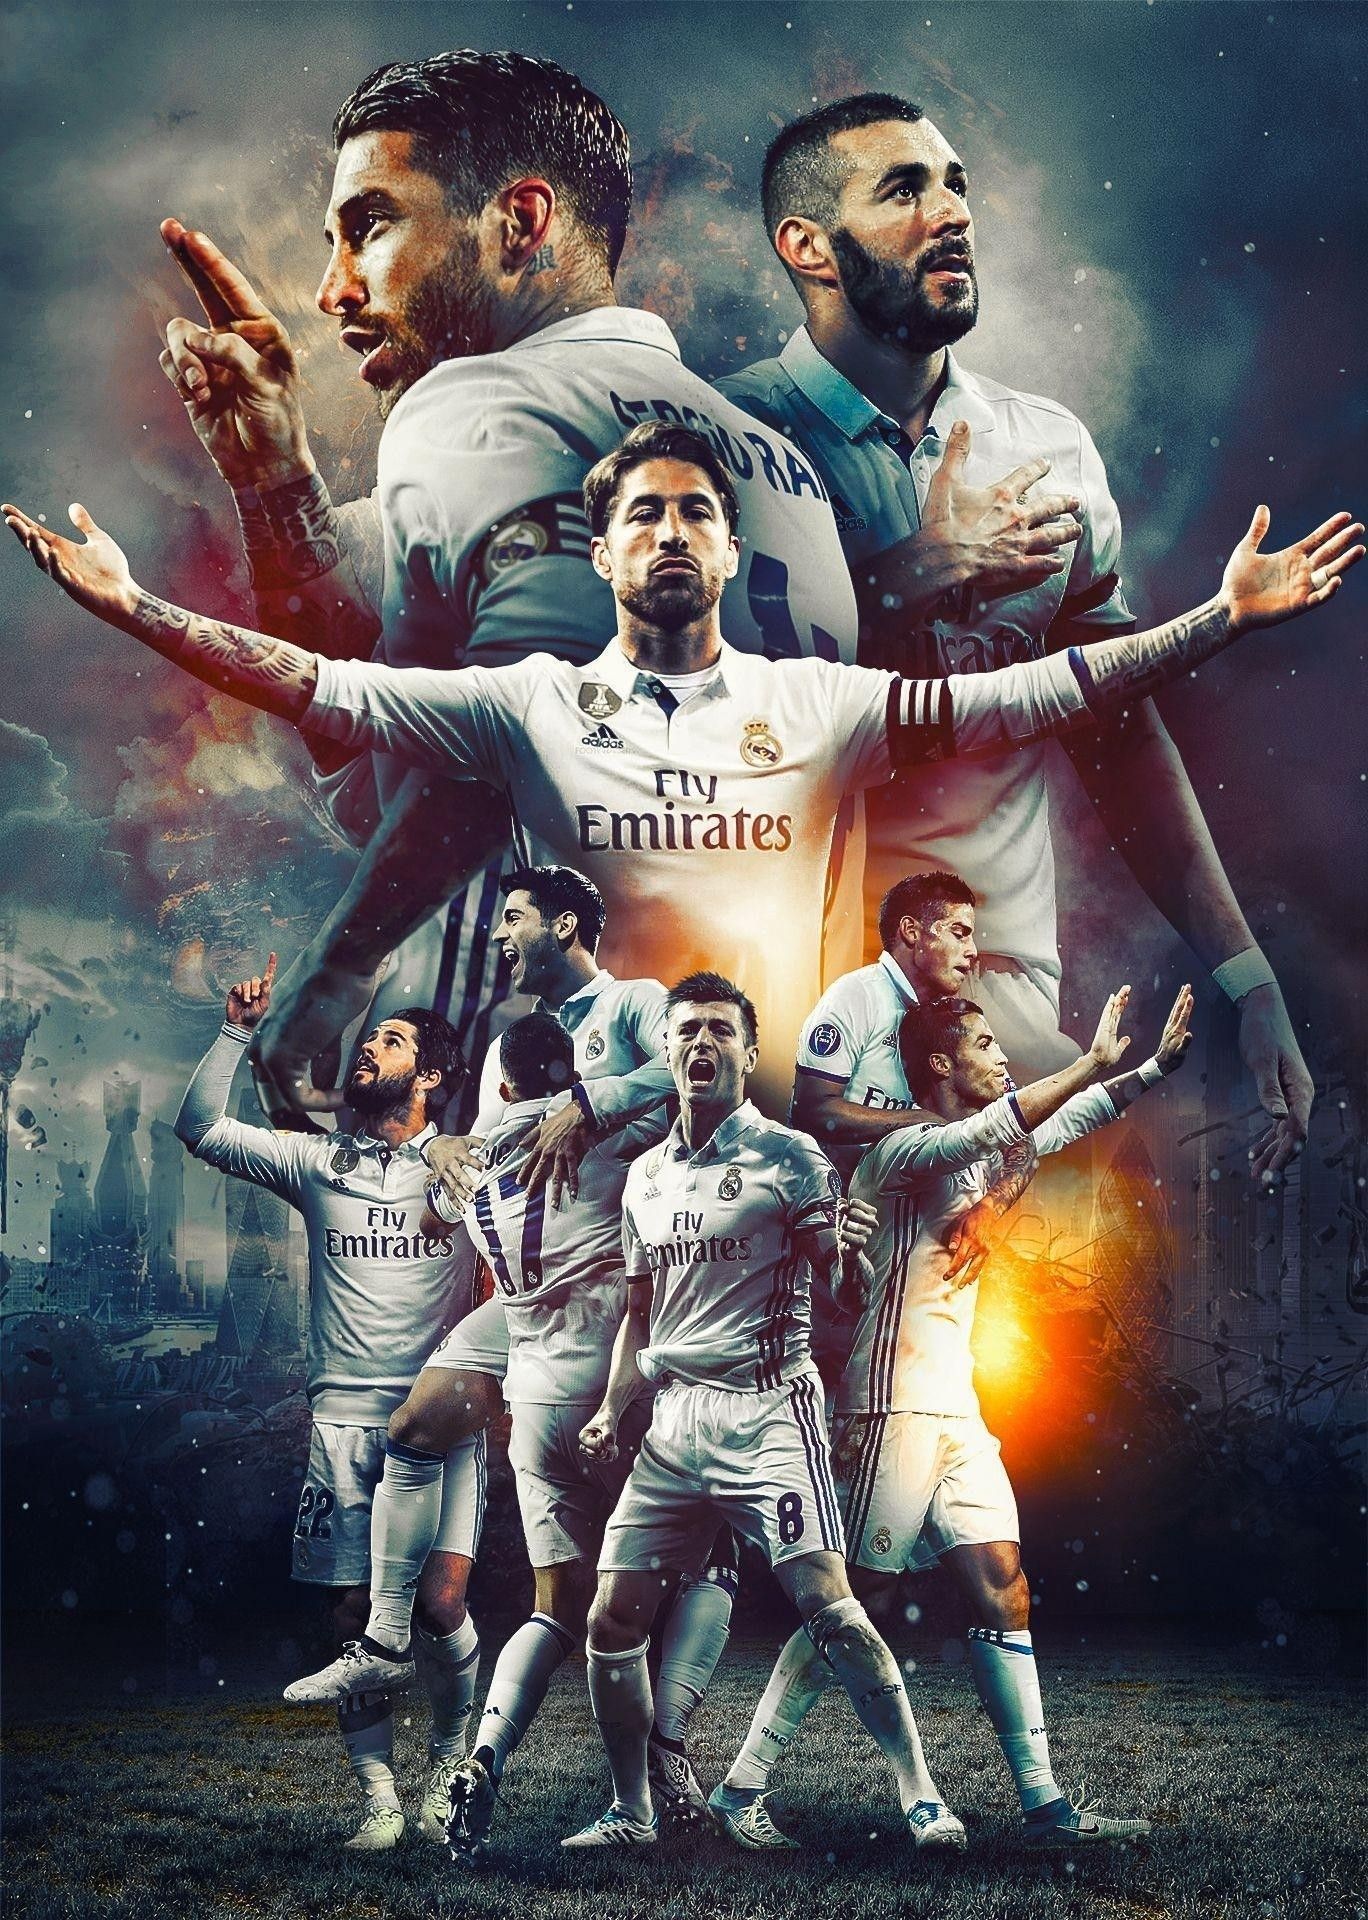 Real Madrid Wallpaper HD 2019 Football. Ronaldo real madrid, Real madrid football, Real madrid image